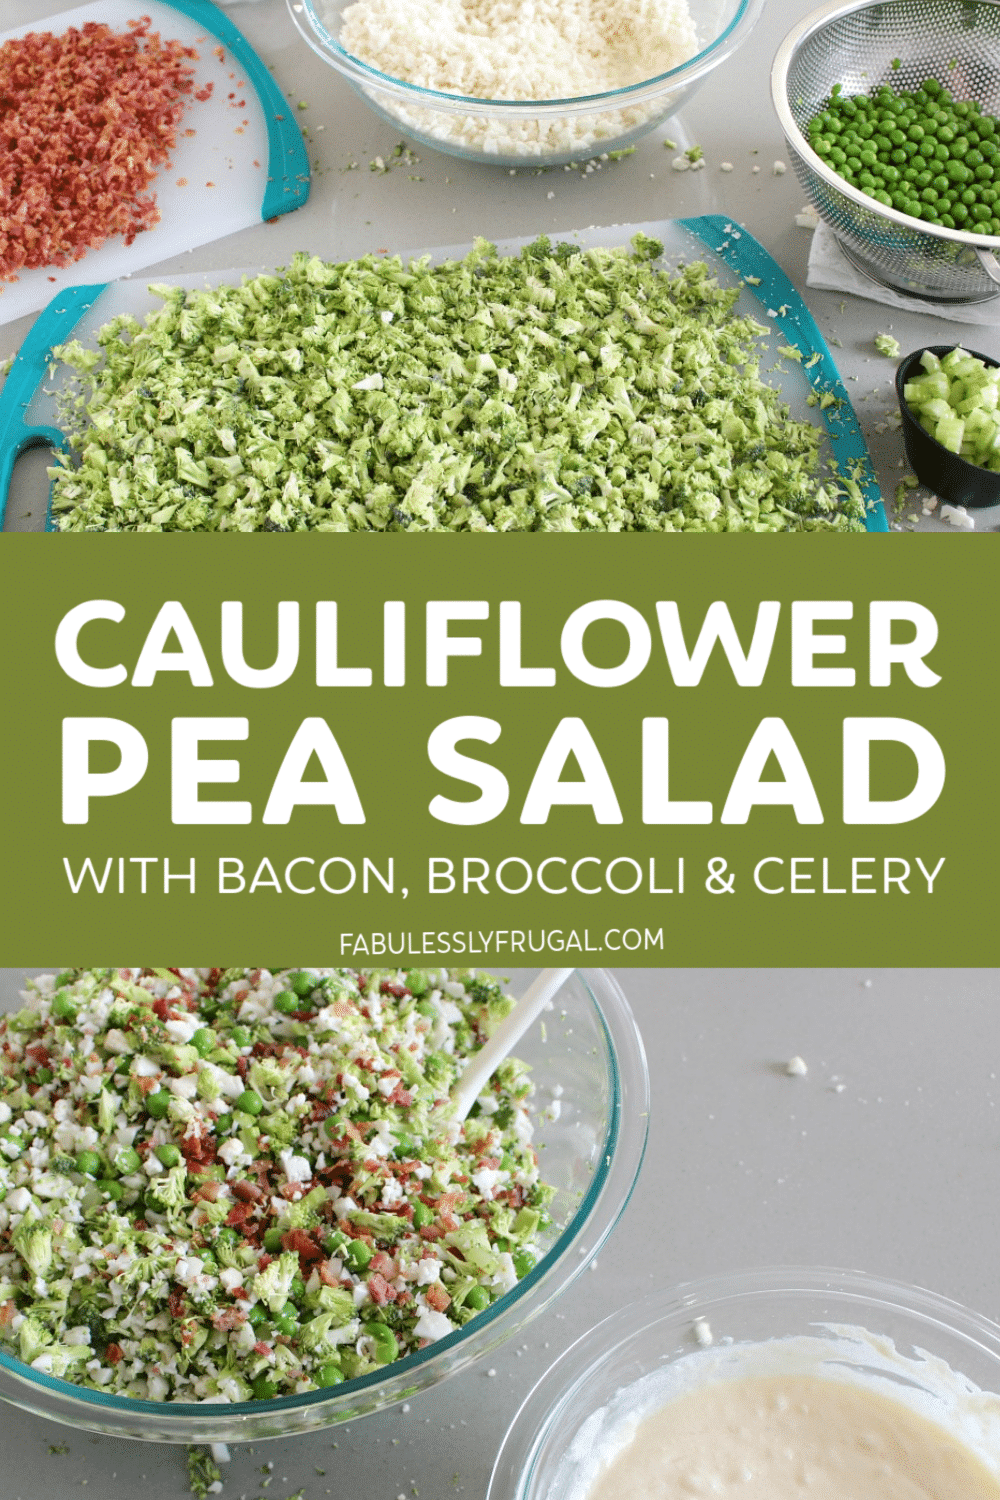 Cauliflower pea salad